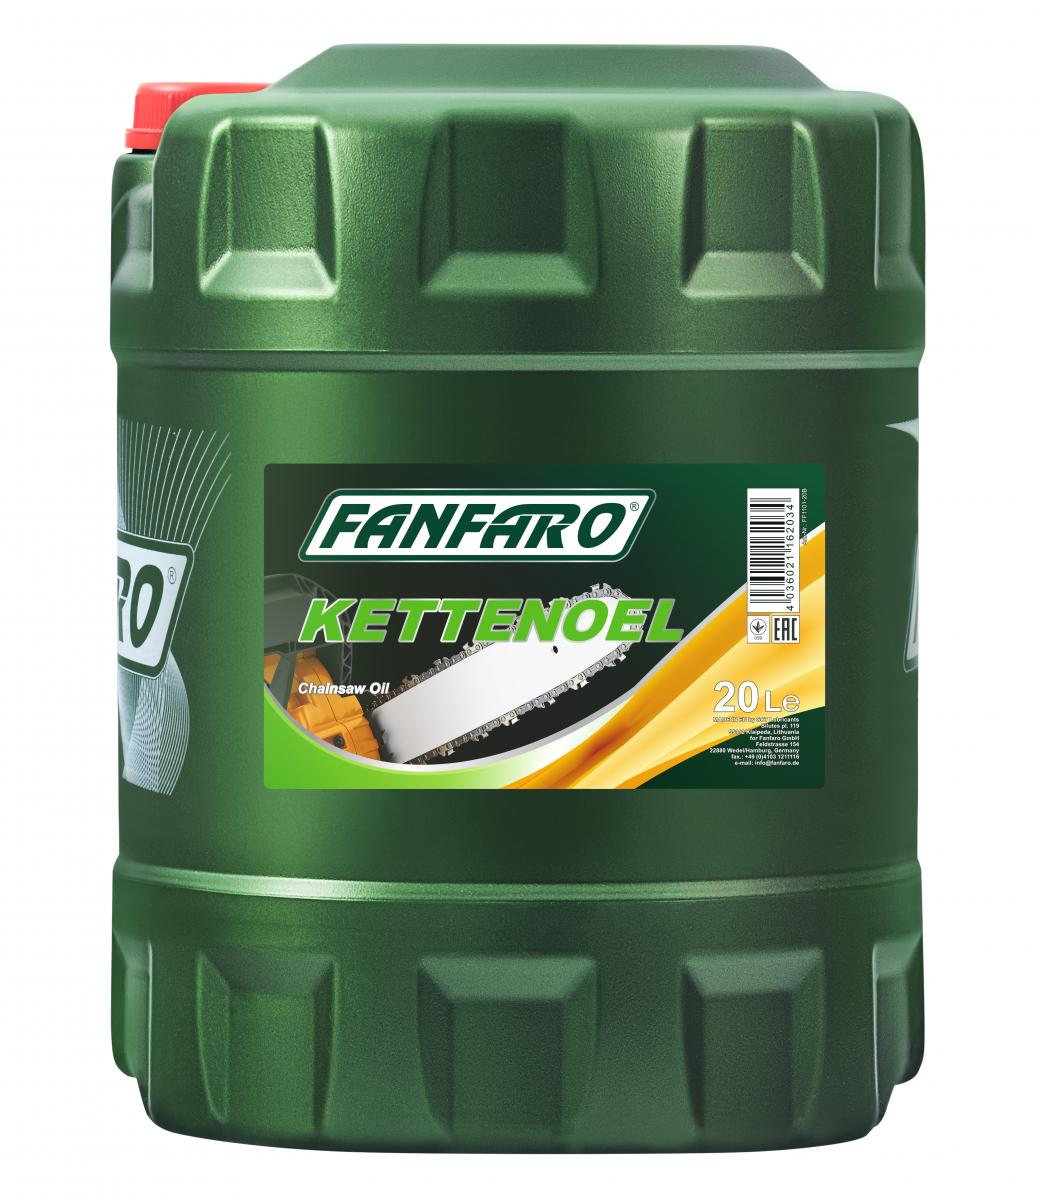 20l Fanfaro 1101 Kettensägenöl Kettenöl für Motorsägen, Kettensägenöle, Service Flüssigkeiten